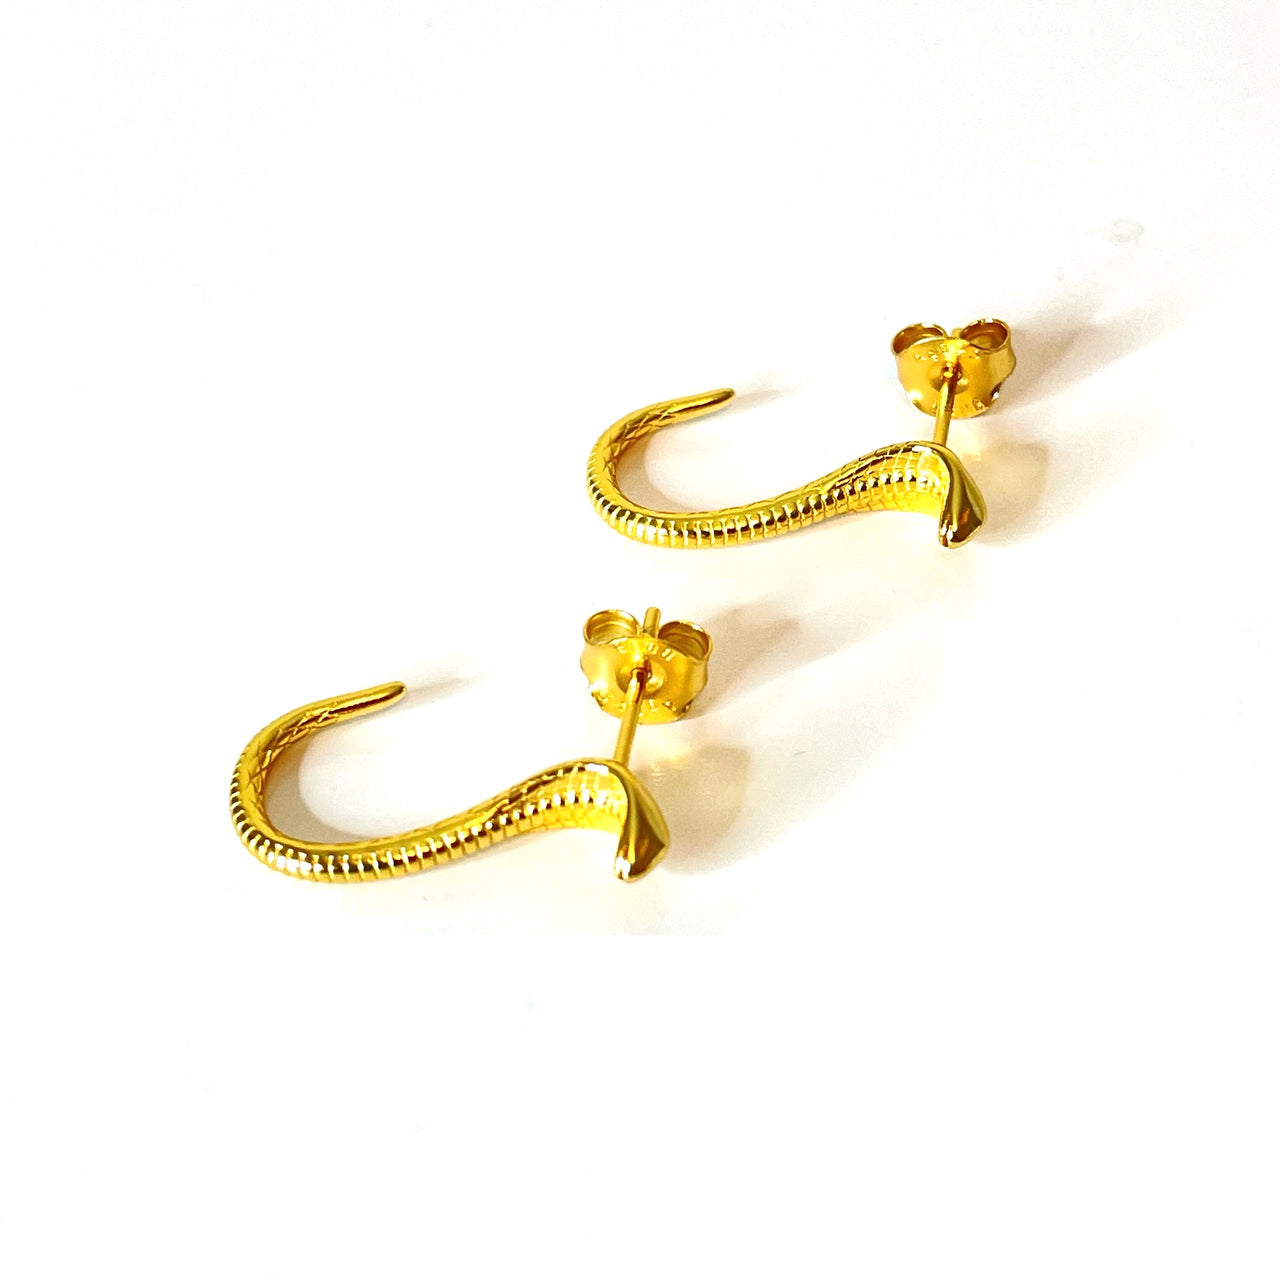 Pendientes con forma de serpiente de plata de ley con baño de oro. Estos pendientes son perfectos para combinar con tu look favorito.